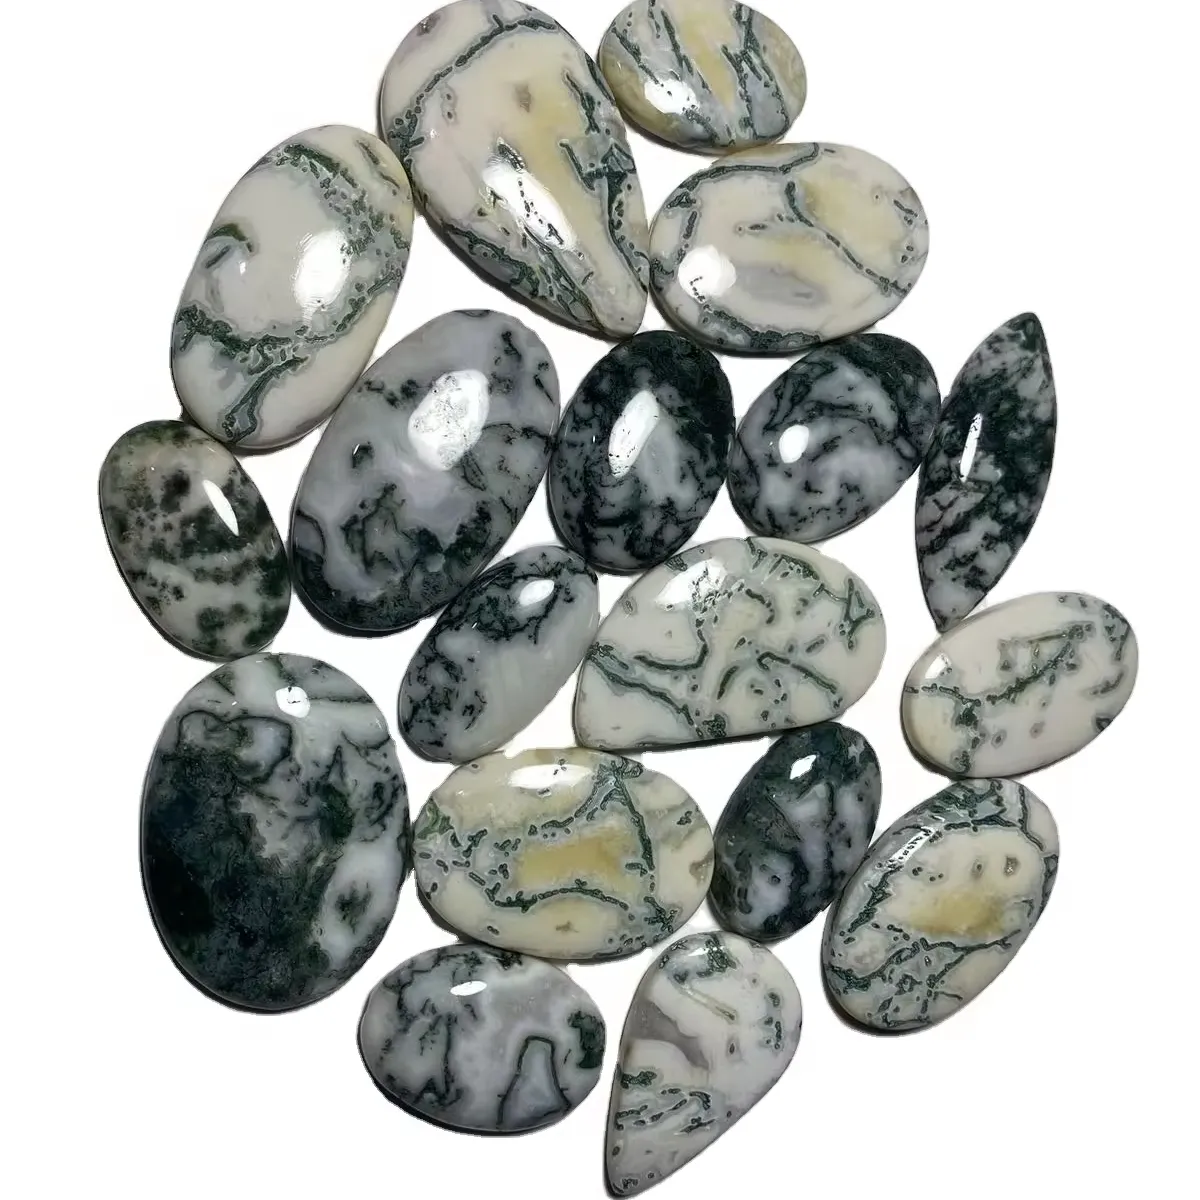 Piedra preciosa de ágata de árbol de alta calidad, piedra preciosa suelta de ágata de cristal de cuarzo pulido para decoración artística y joyería